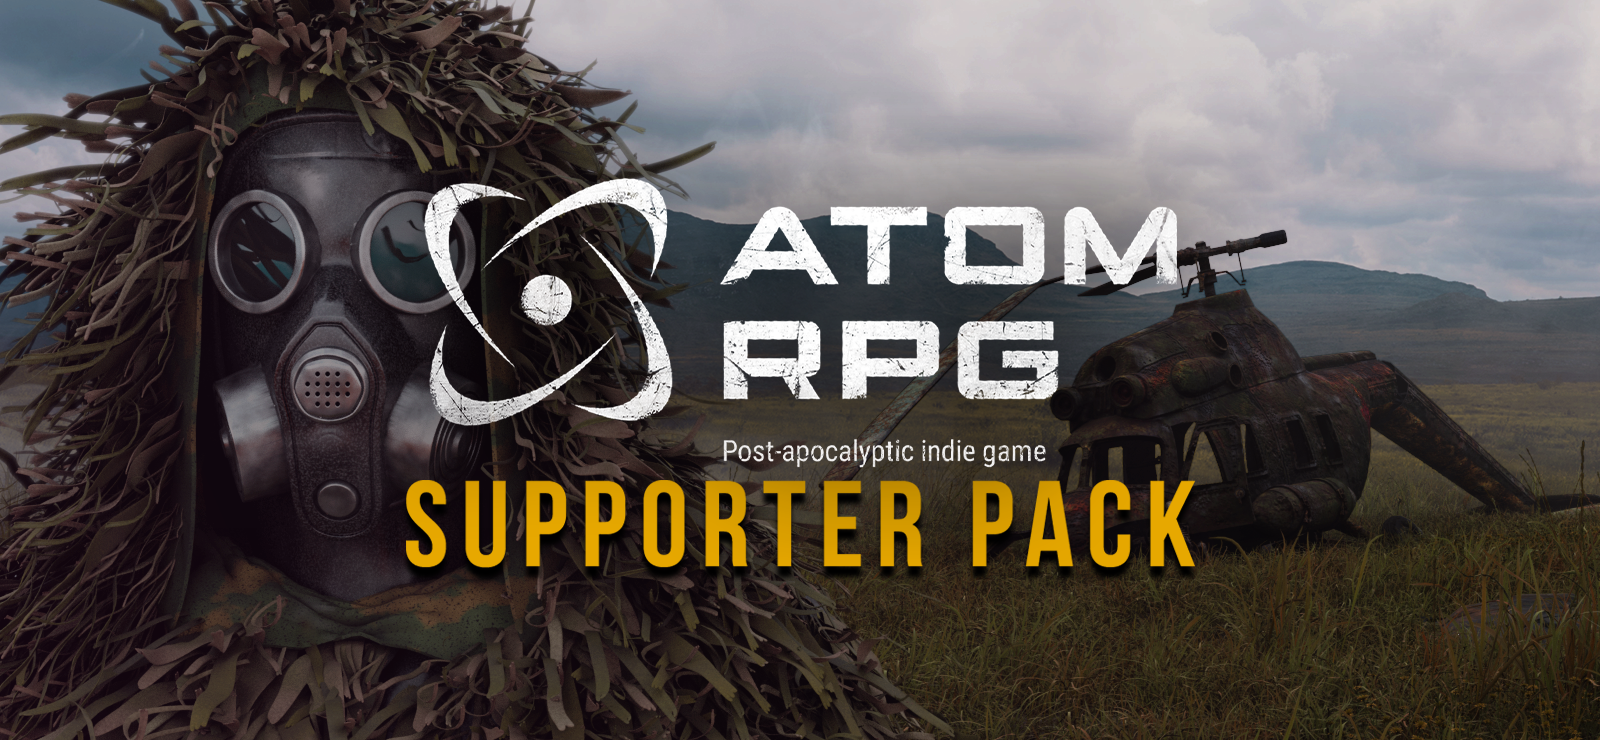 ATOM RPG - Supporter Pack